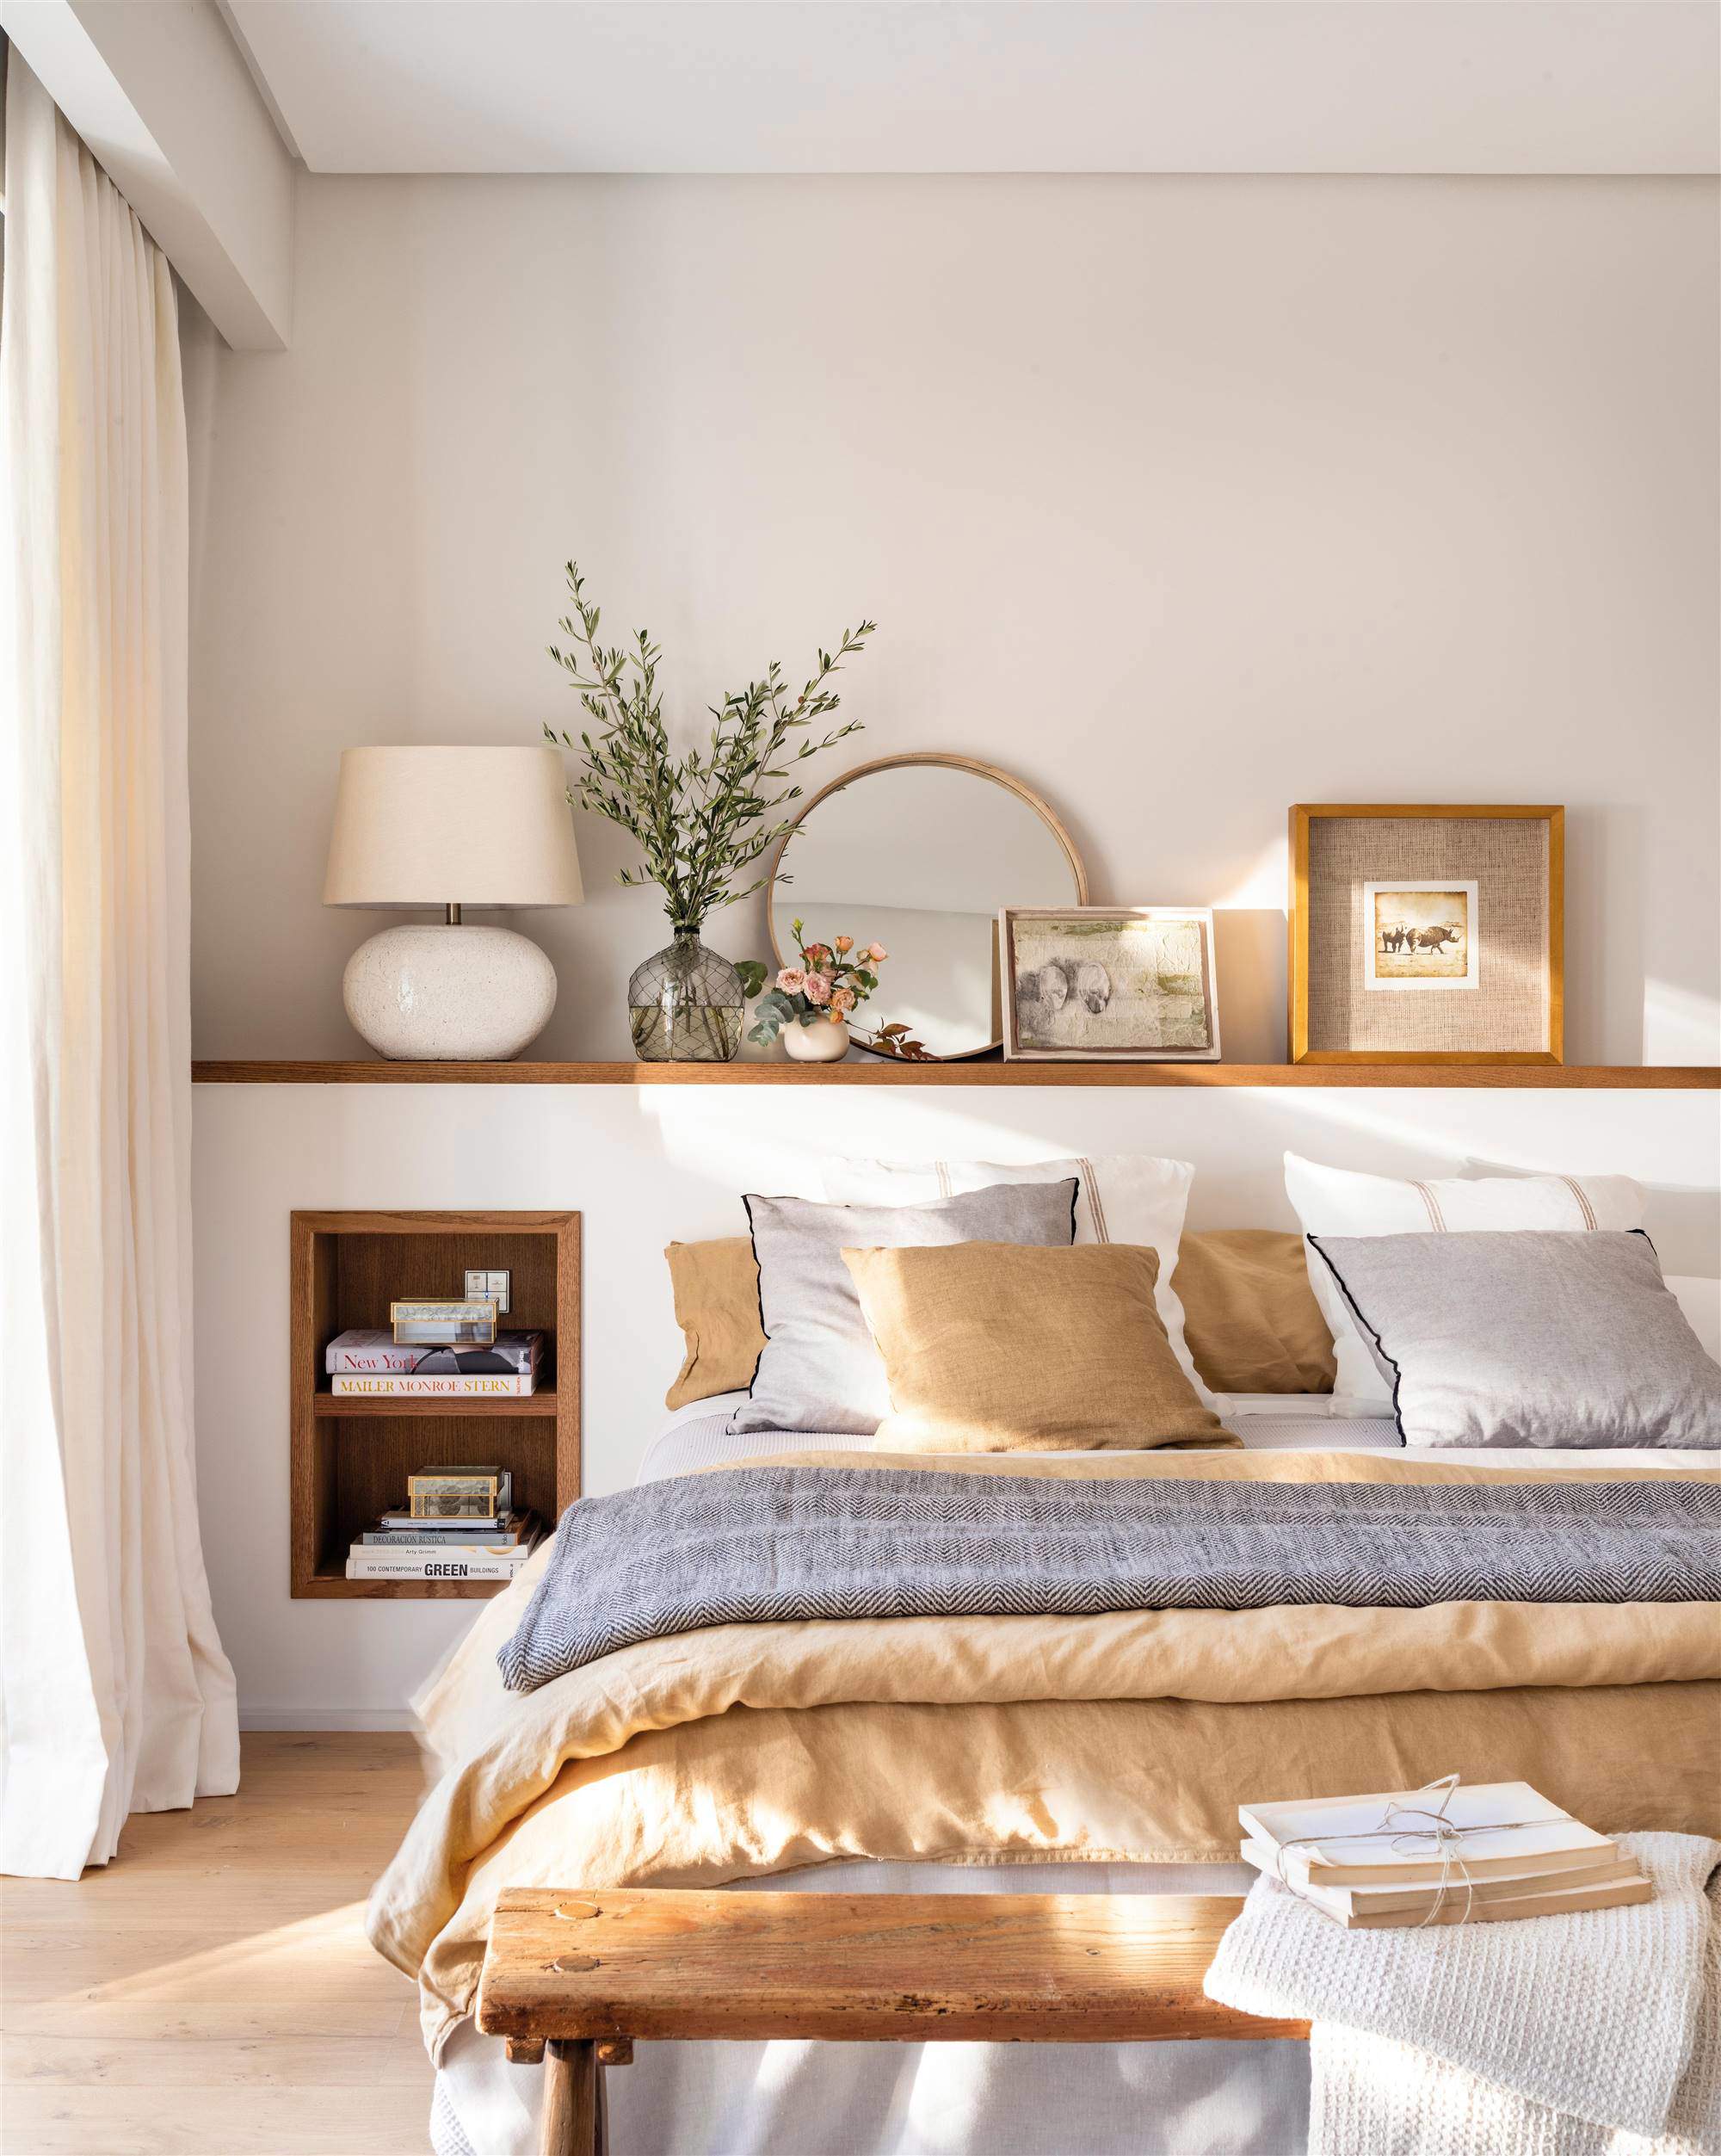 Dormitorio con cabecero de obra y una composición de cuadros, flores y un espejo redondo en la repisa del cabecero.